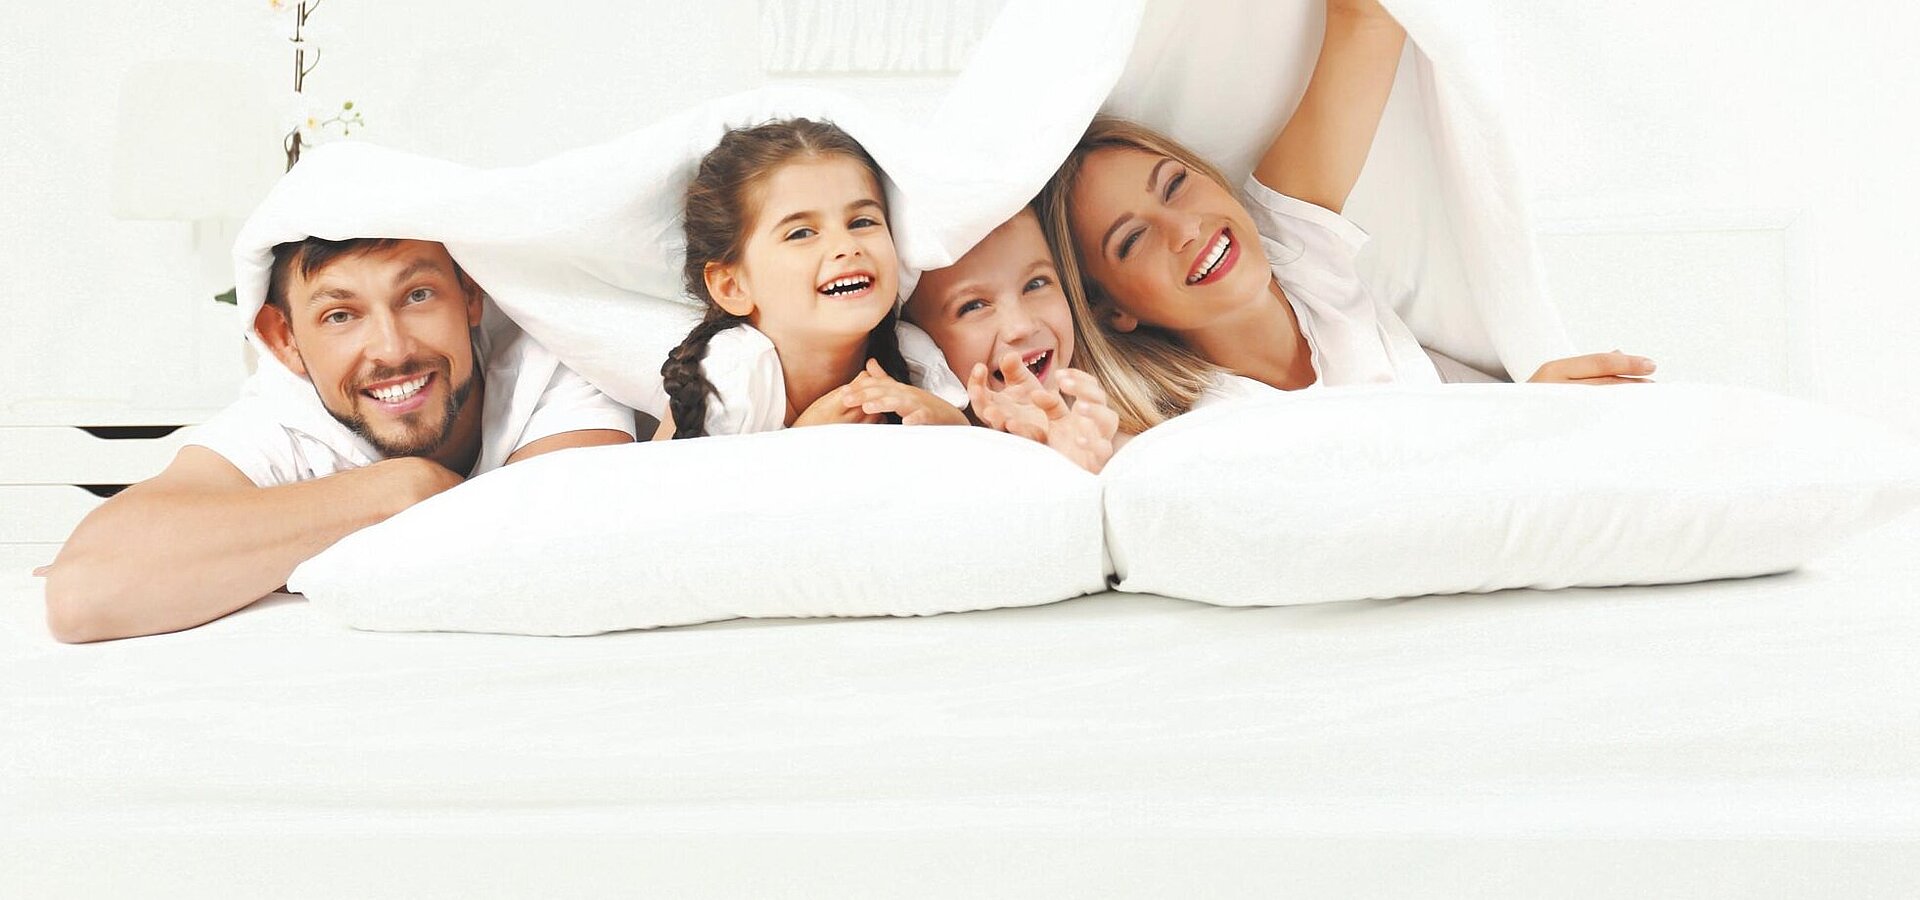 Eine Familie aus Vater, Mutter und zwei Kindern liegt komfortabel und fröhlich auf weißen Kissen unter einer weißen Bettdecke. Das Bild strahlt Gemütlichkeit und Gelassenheit aus.